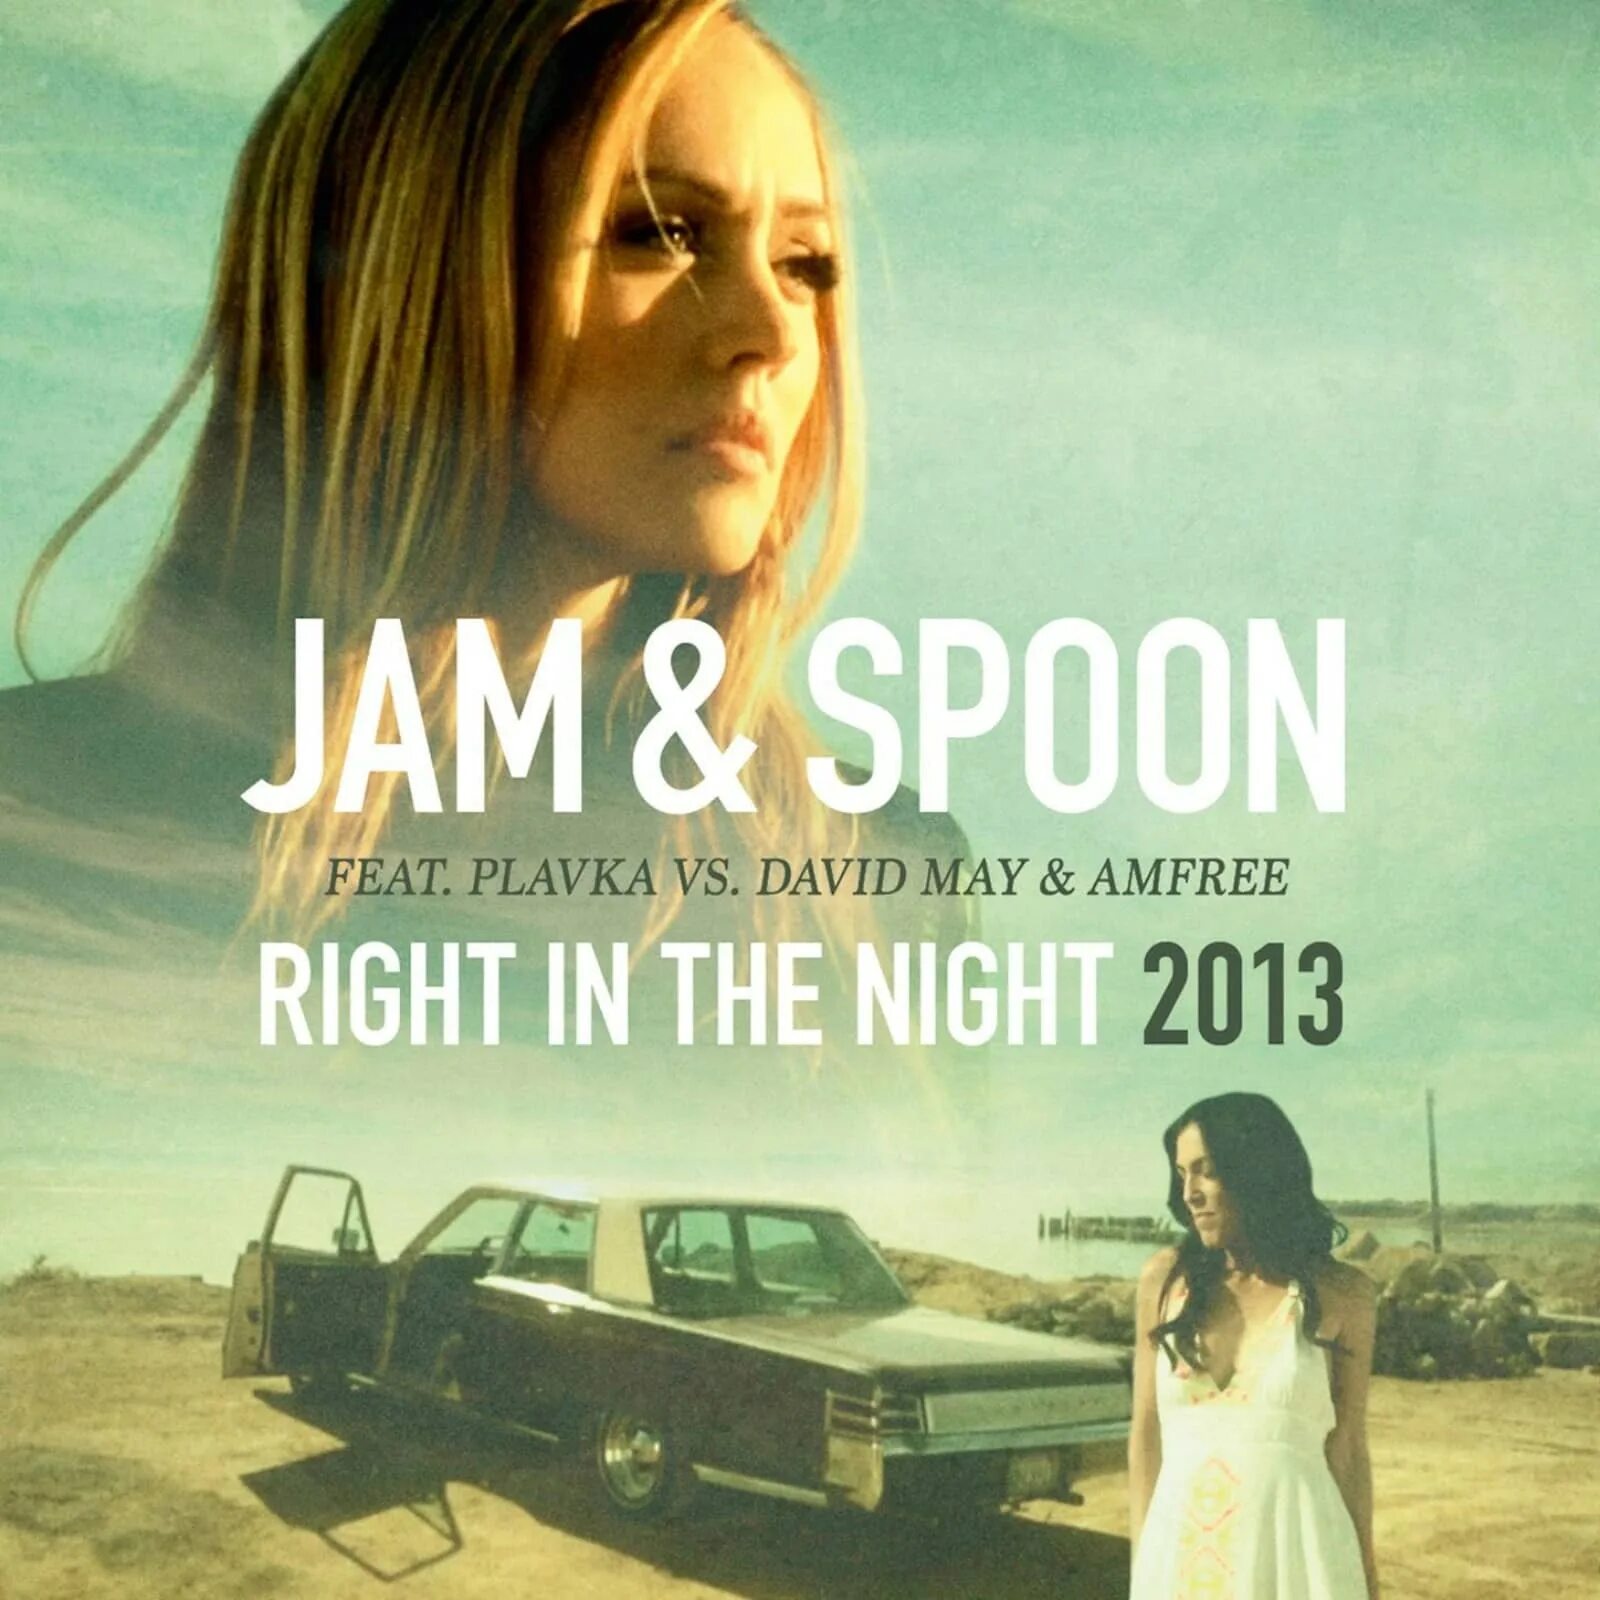 Jam Spoon right in the Night. Plavka Jam Spoon. Jam Spoon Plavka - right in the Night. Jam & Spoon feat. Plavka. Plavka right